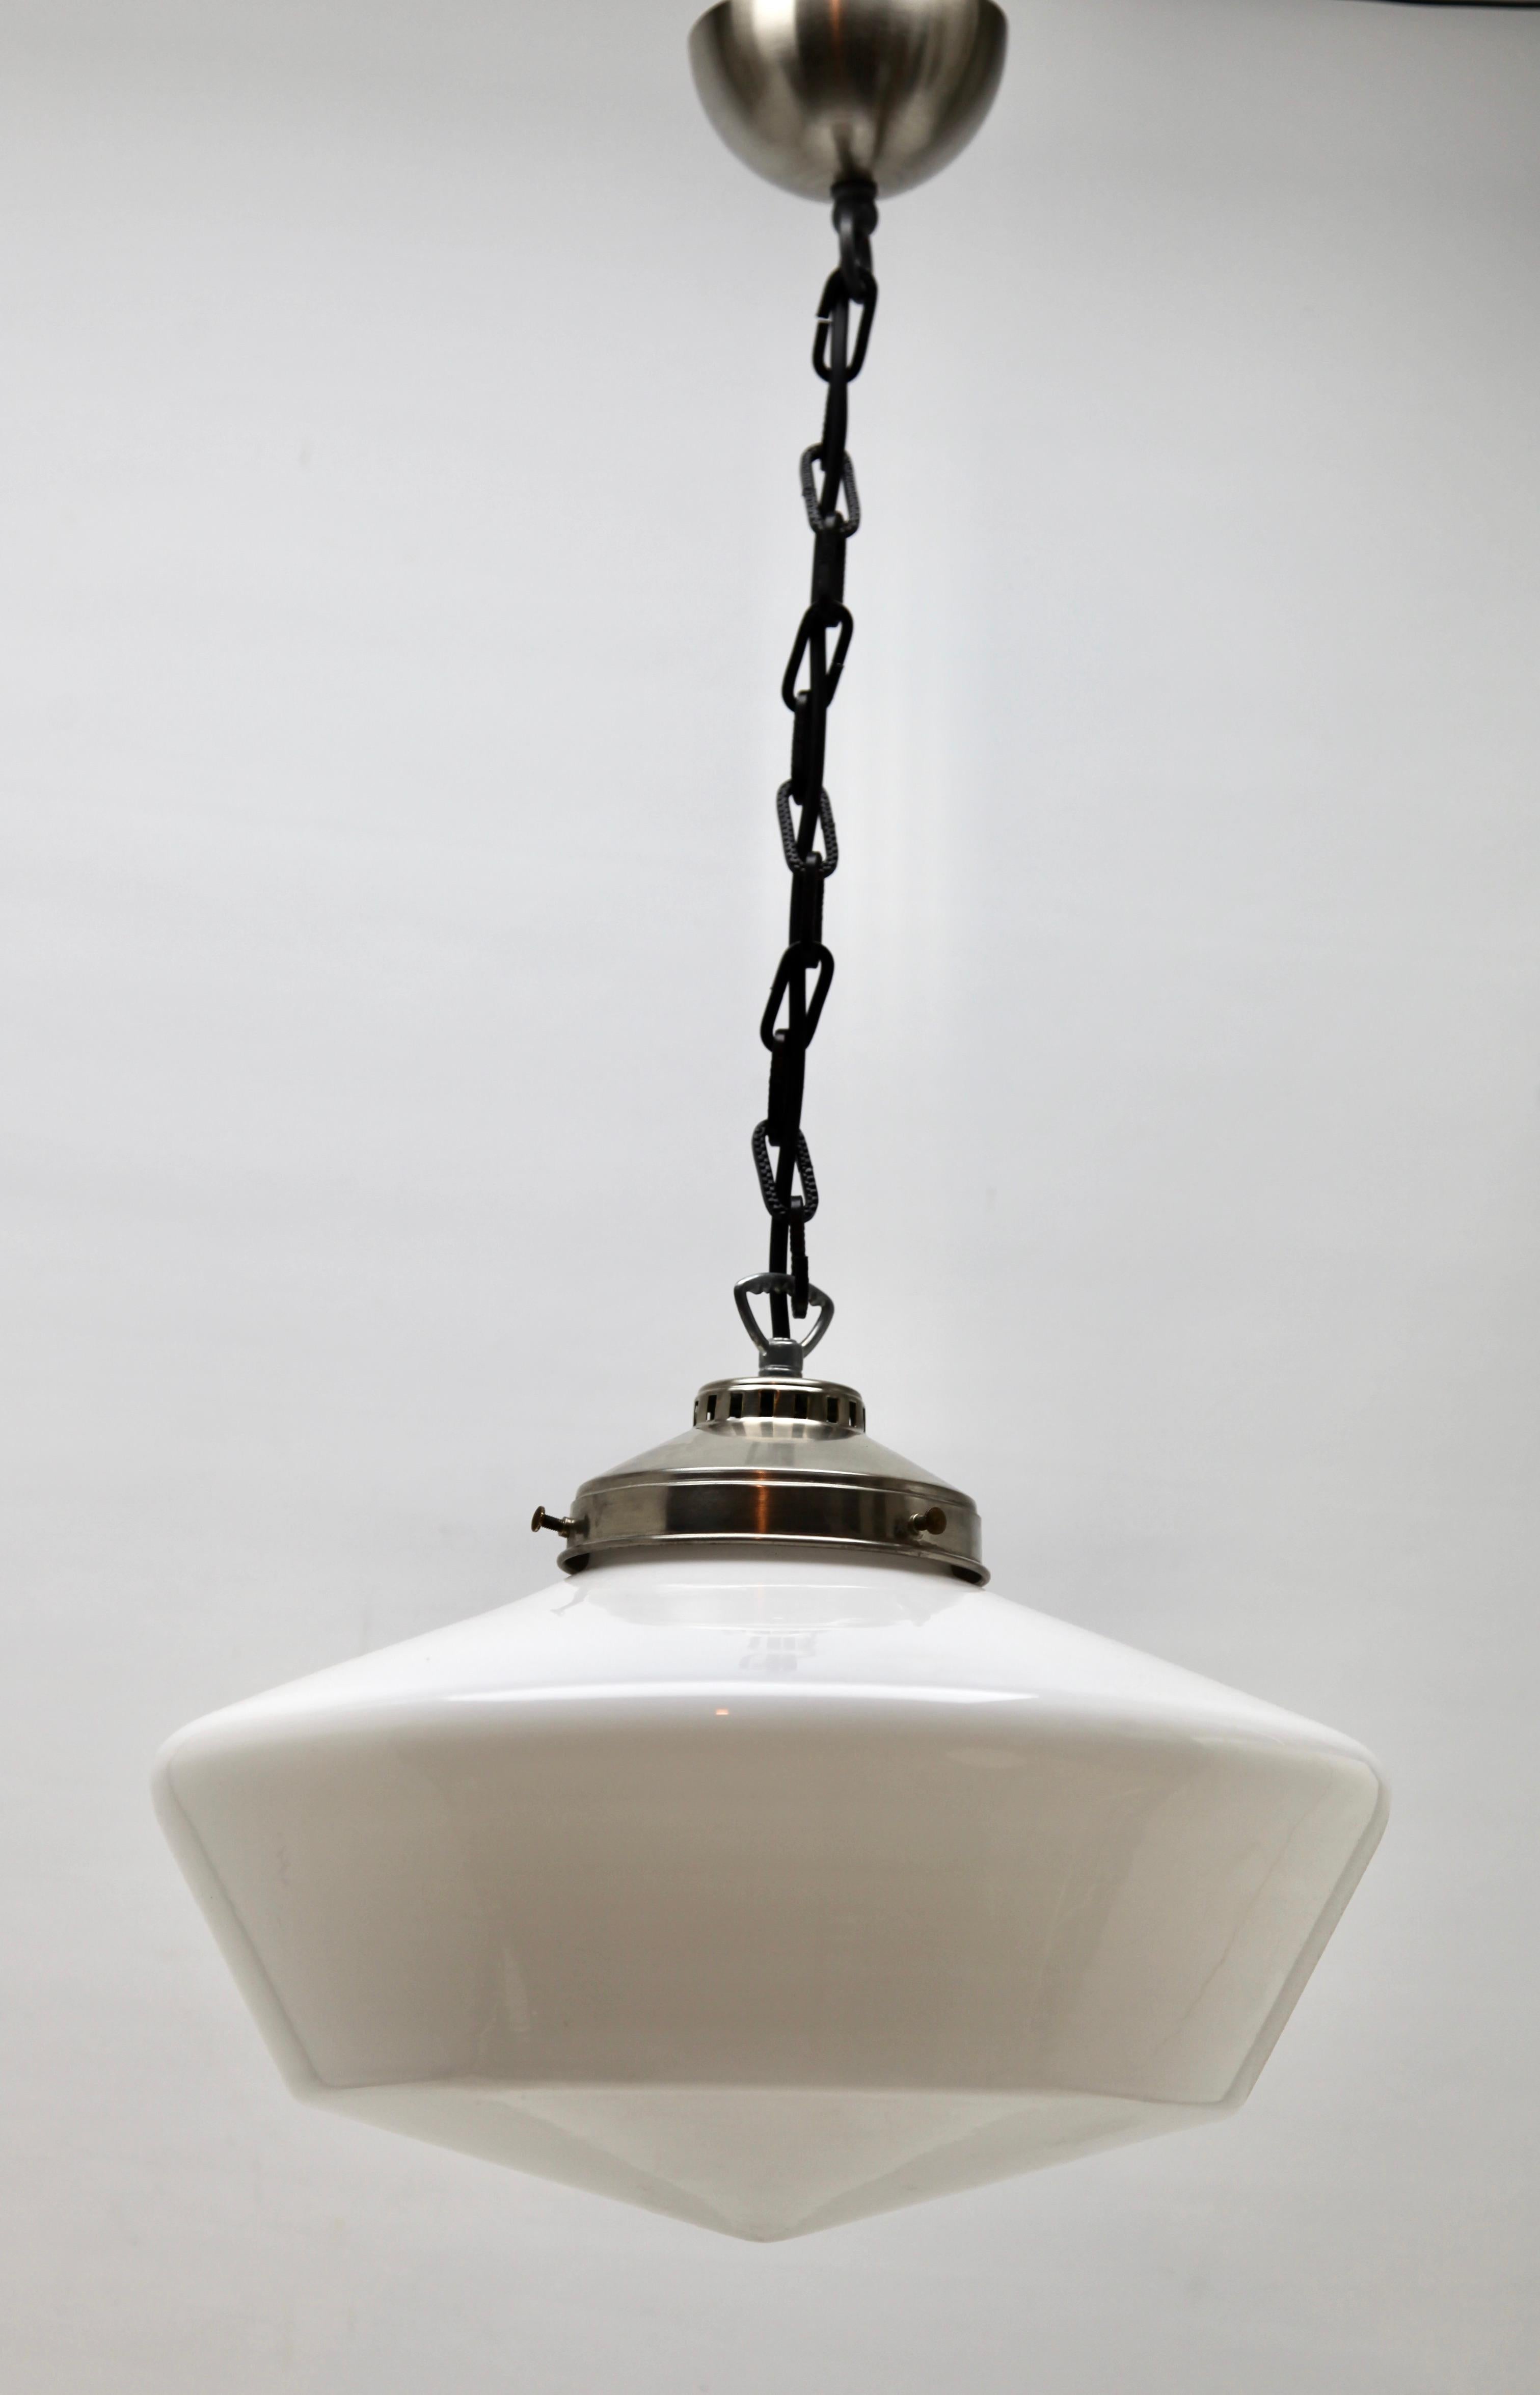 Aus dem Sortiment der Phillips Company, diese zentrale Leuchte an einer zentralen Kette. Die Lampe hat eine Halterung auf einer verchromten Platte und trägt einen abgestuften kugelförmigen Schirm aus Opalglas.

2 Availebel

In gutem Zustand und voll